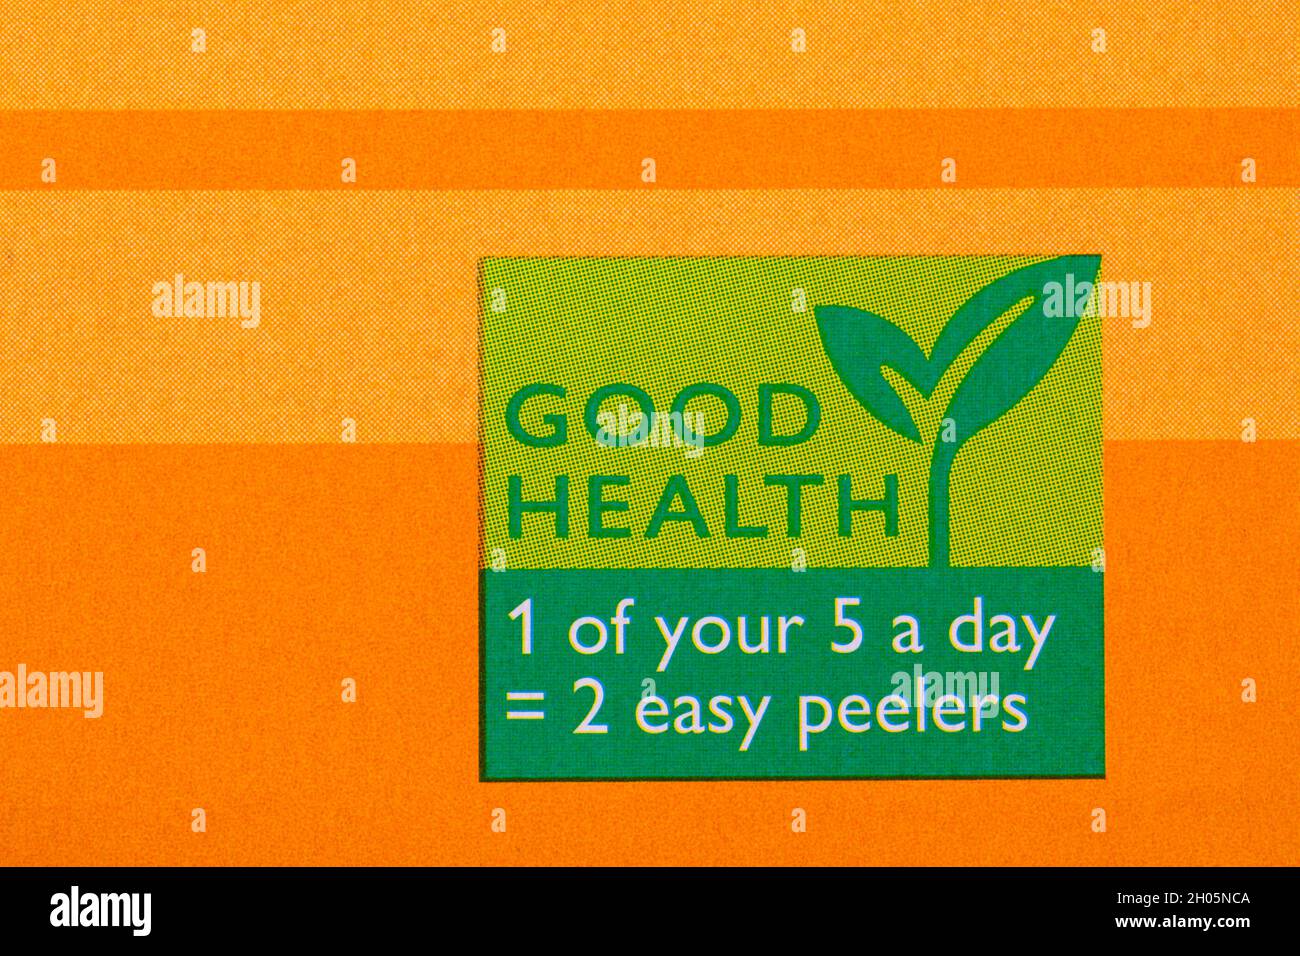 Bonne santé 1 de vos 5 par jour = 2 peelers faciles - détail sur boîte de fruits Peelers faciles Banque D'Images